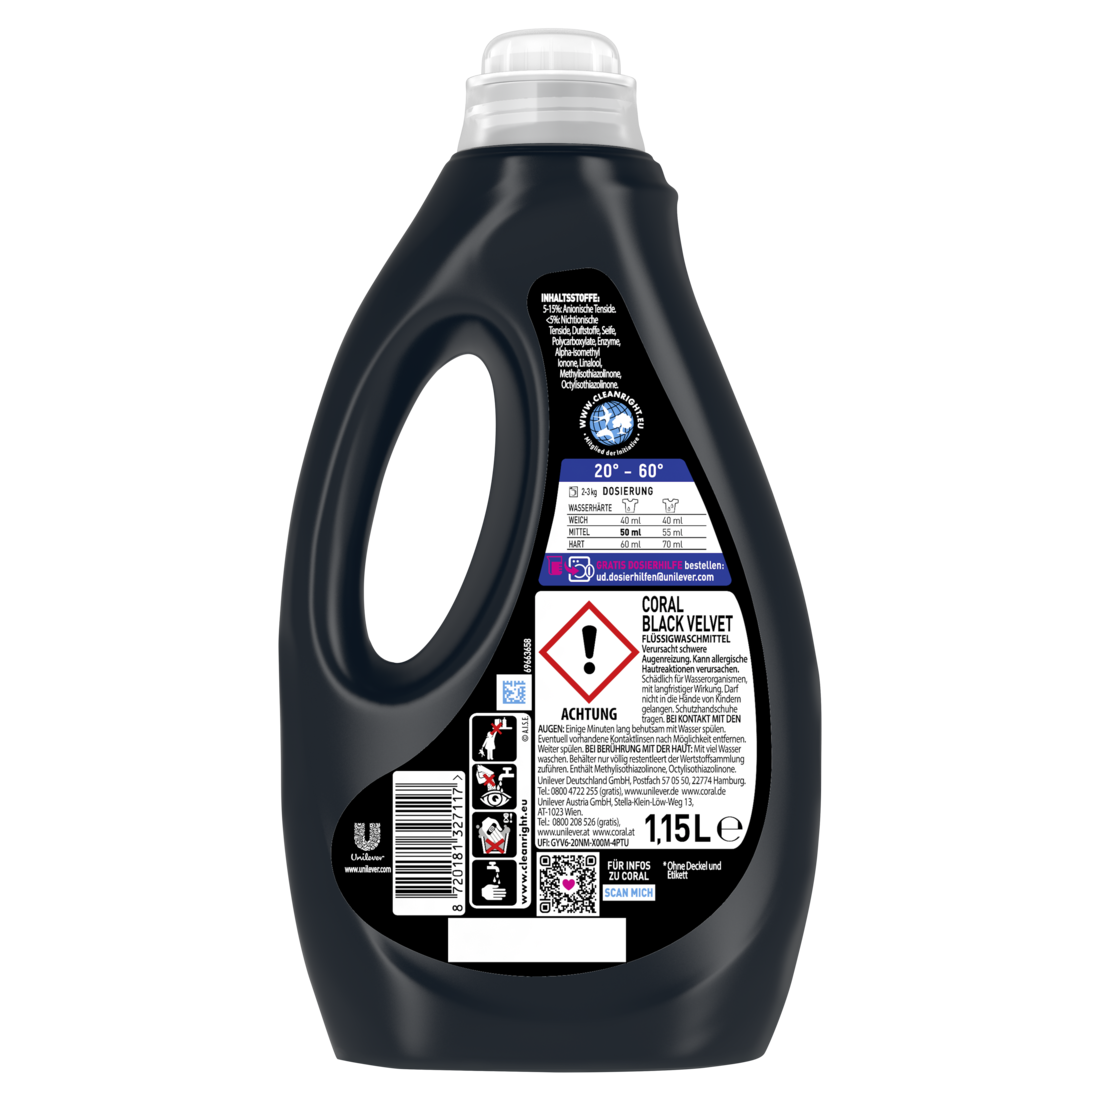 Colorwaschmittel Black Velvet Flüssigwaschmittel für länger intensives Schwarz mit Farbpflege-Kraft natürlicher Herkunft 23 WL 1,15 Liter